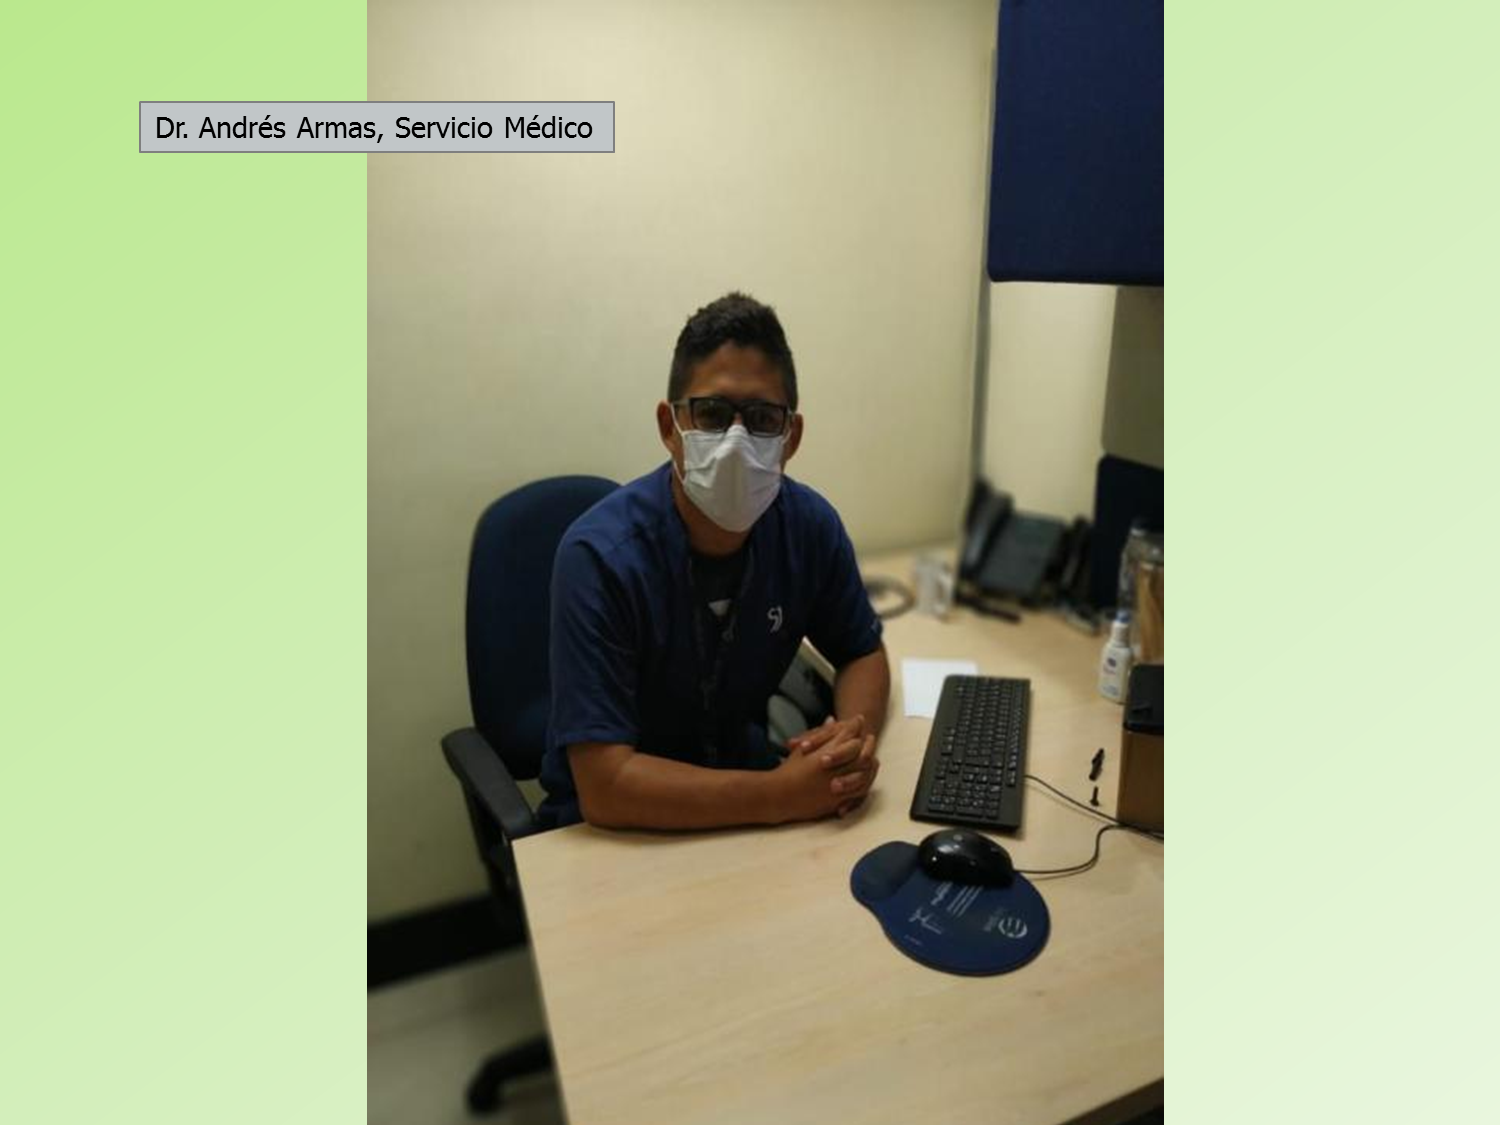 Dr. Andrés Armas servicio médico - Aplaudimos a nuestros colaboradores y seguimos Haciendo País